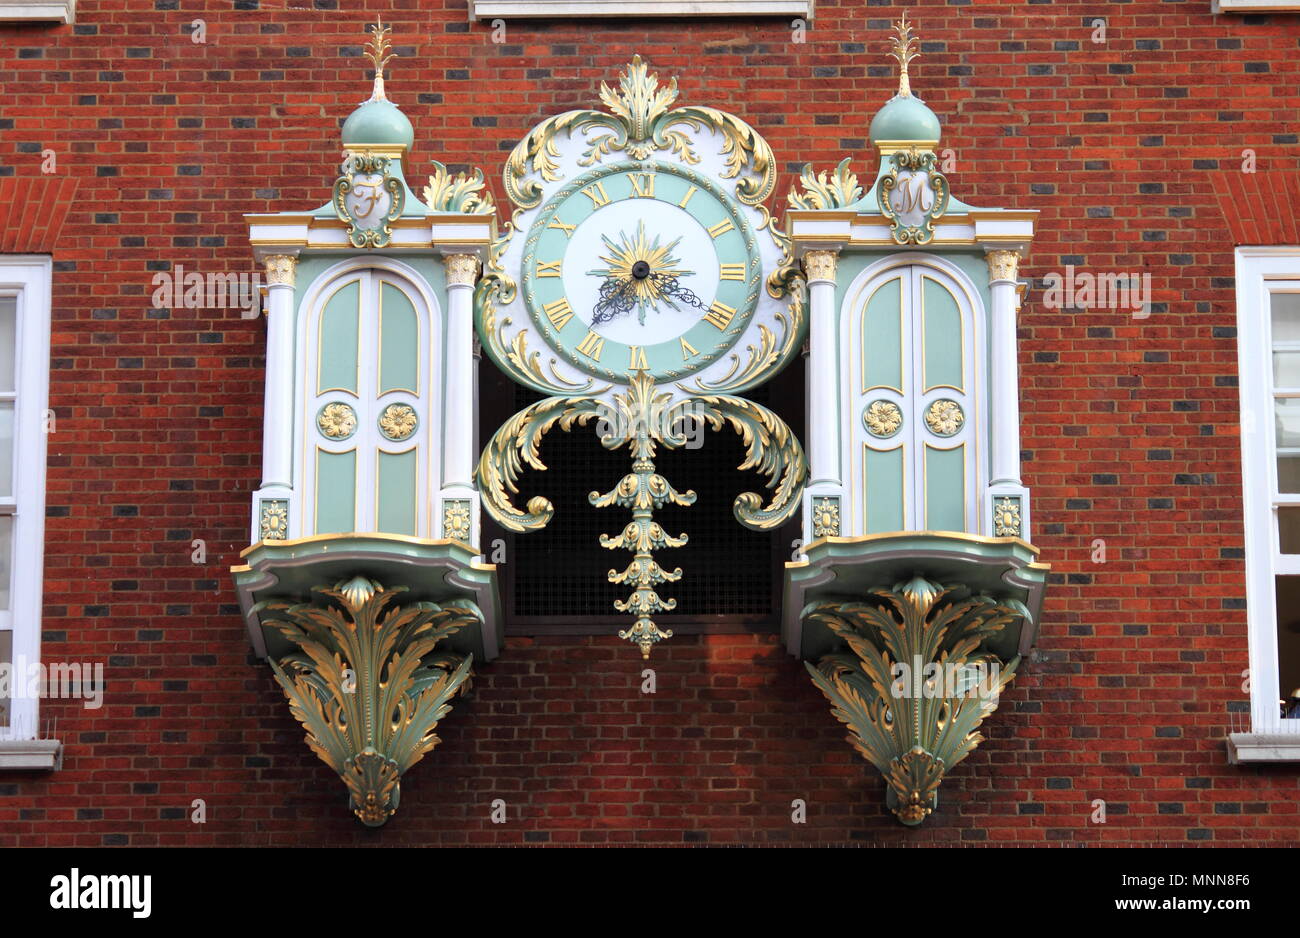 Londra - 7 agosto: Fortnum & Mason department store di orologio meccanico in posizione chiusa il 7 agosto 2014 a Londra, Regno Unito. Fortnum & Mason ha bee Foto Stock